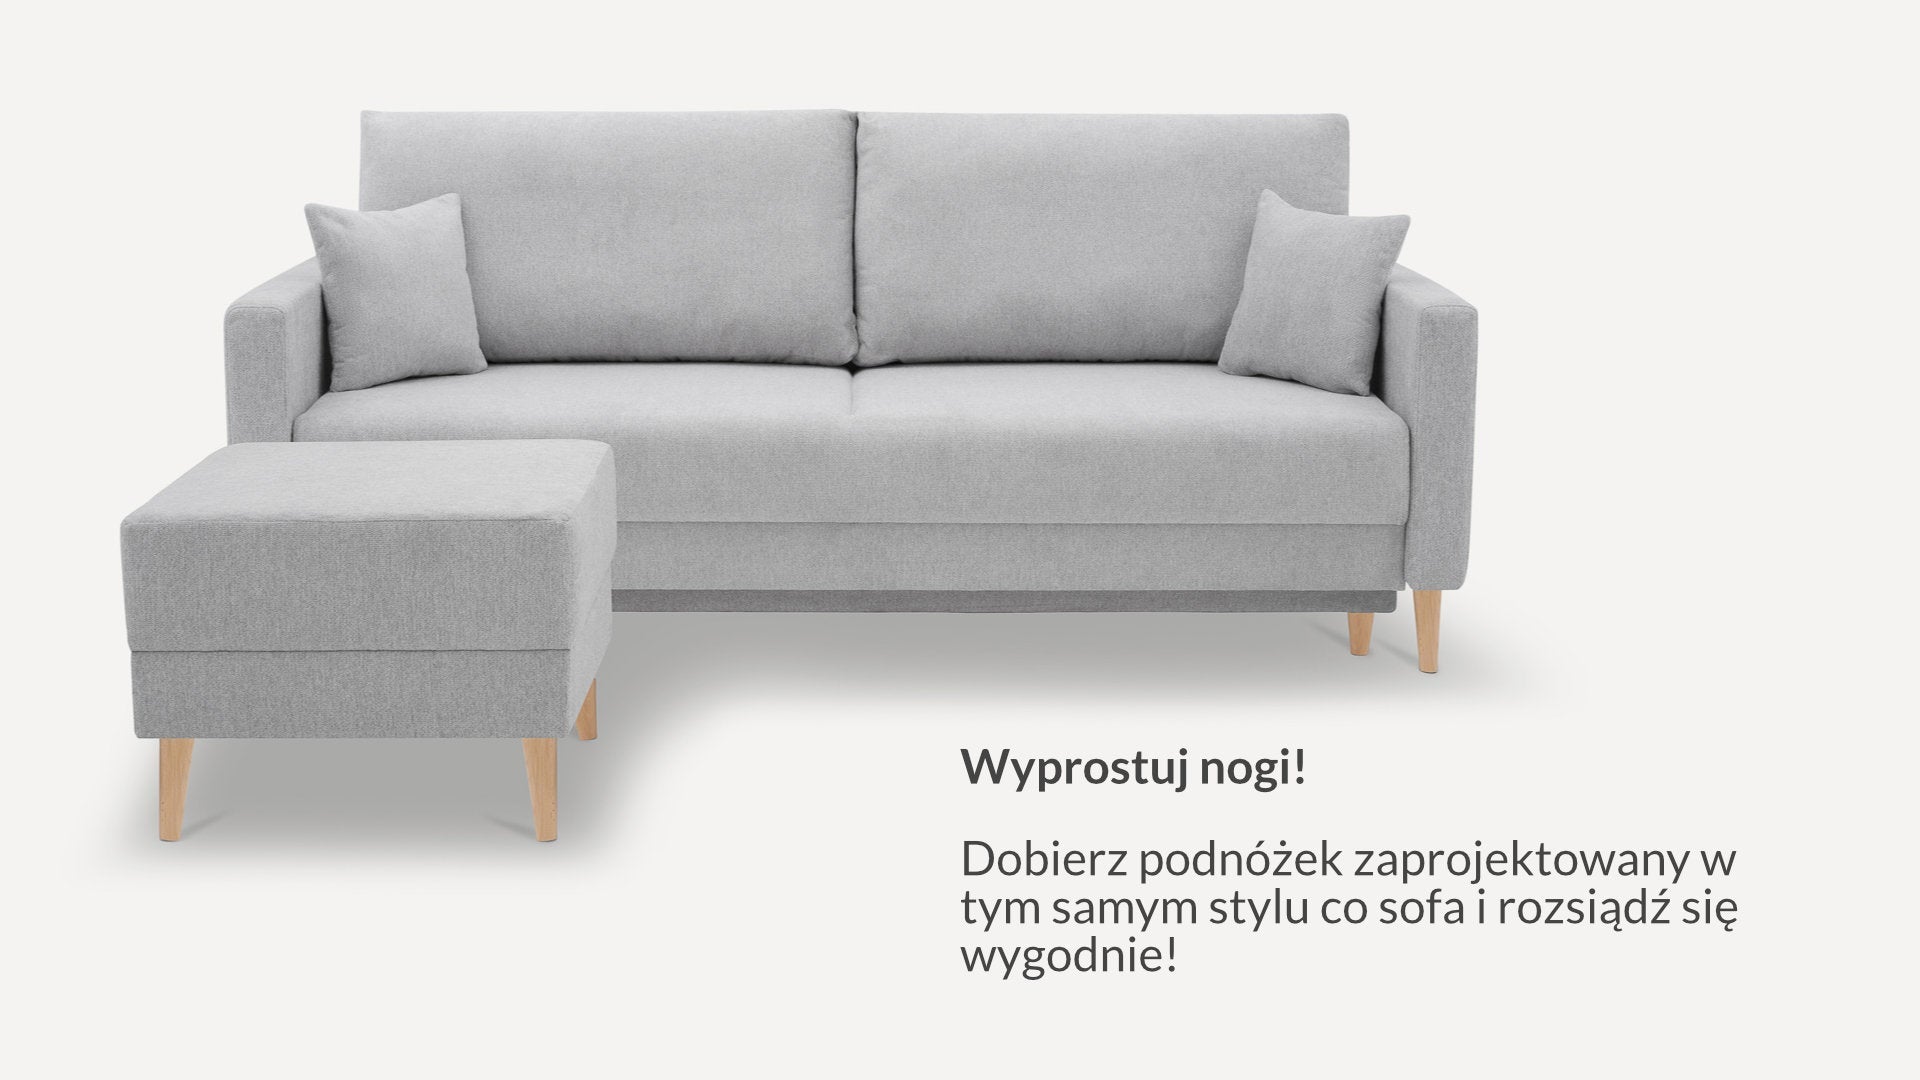 Sofa Benet noDL Szenil - Benet